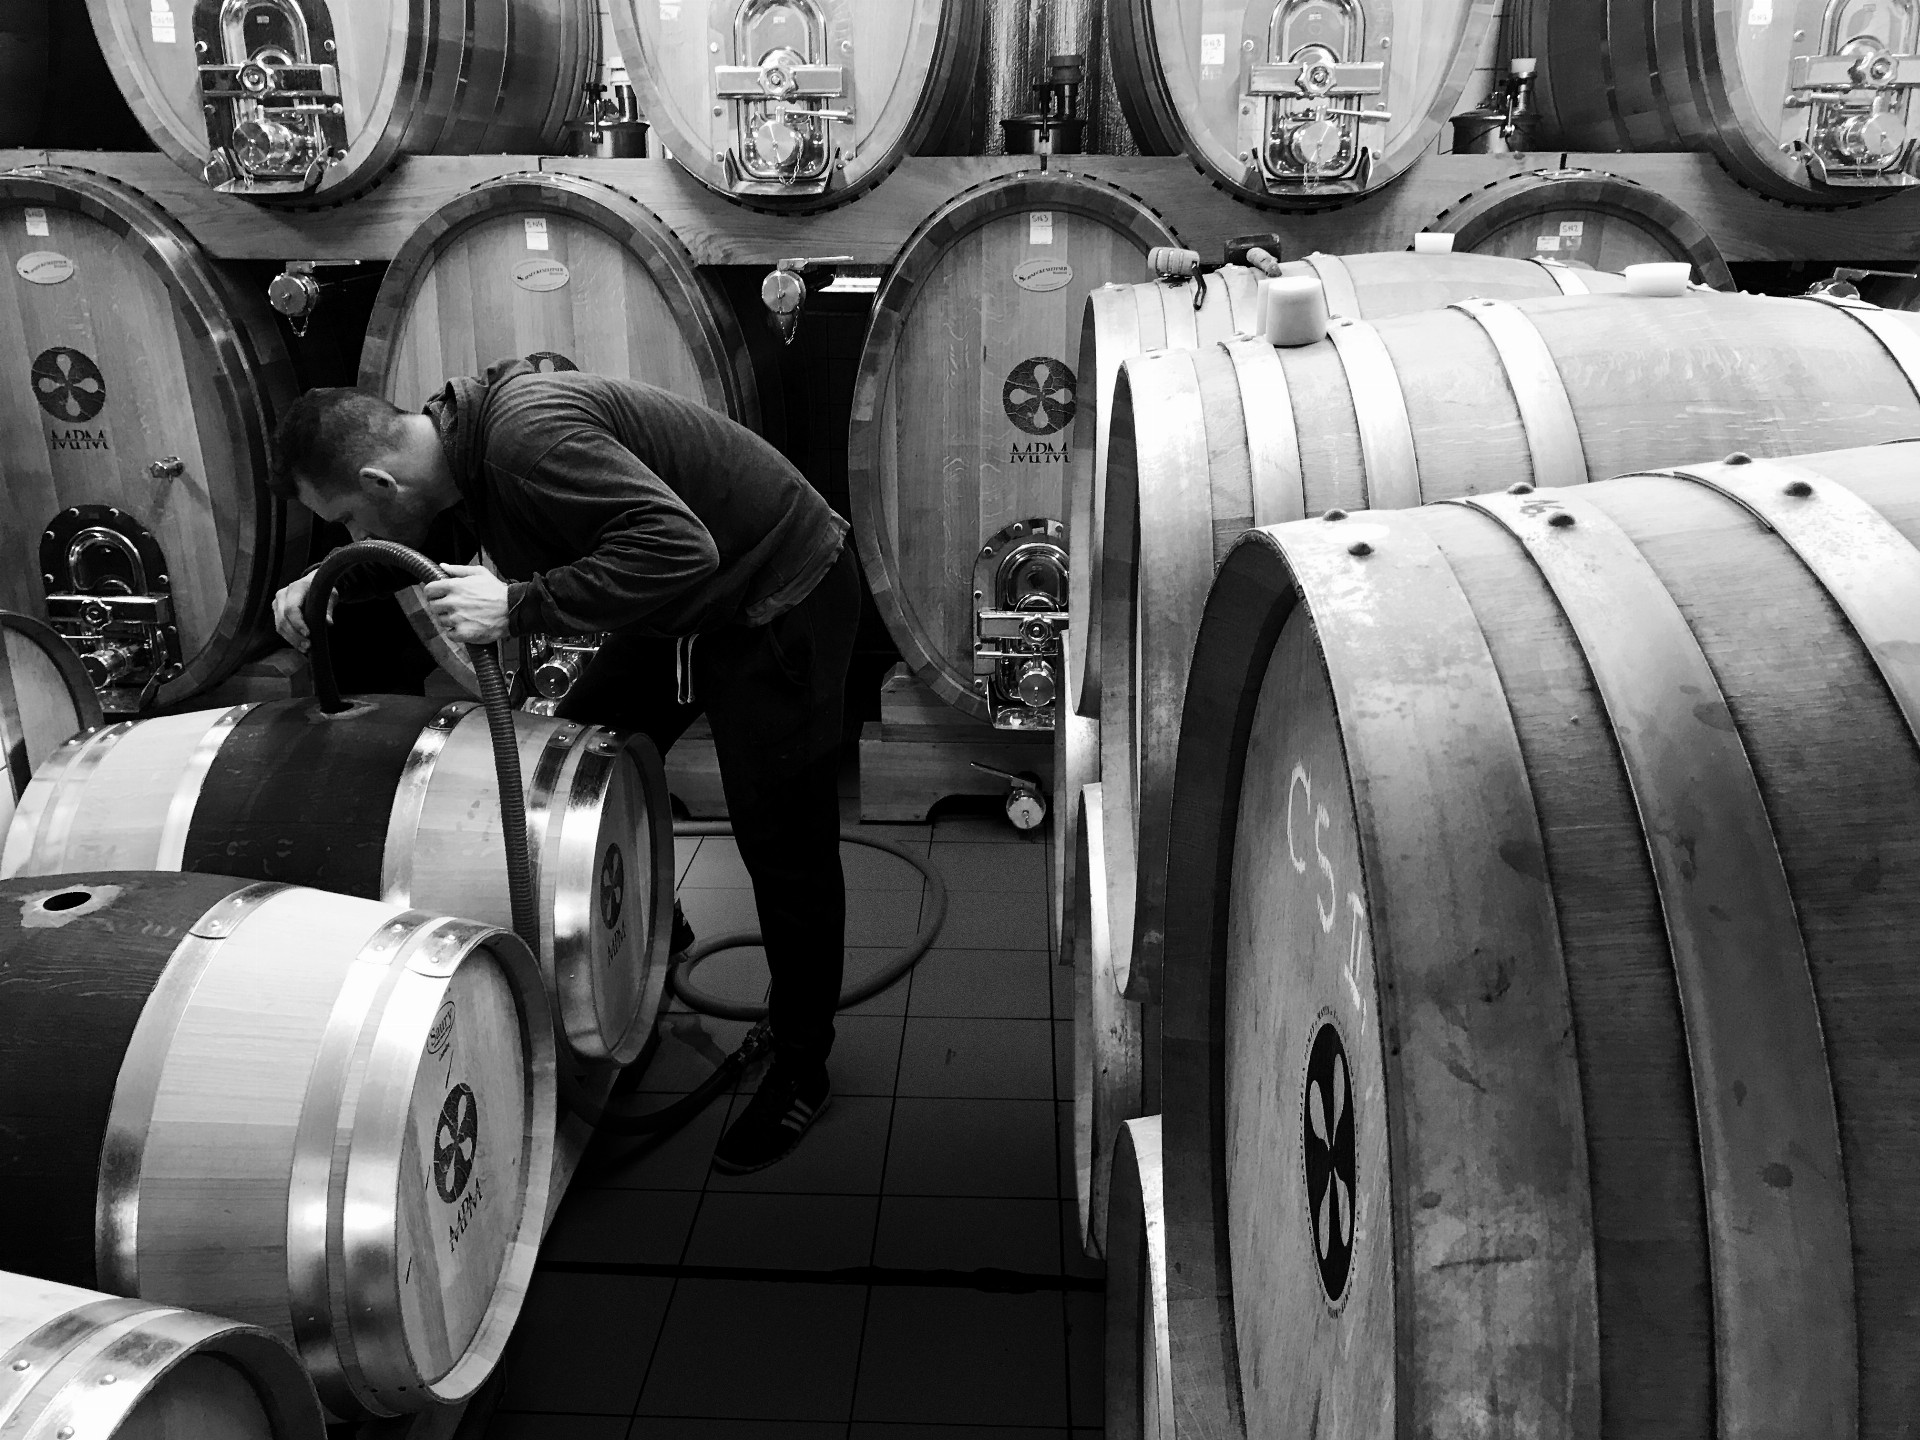 Juraj Kvačala prešiel dlhú cestu, dnes vkladá svoje úsilie do špičkových slovenských vín vo vinárstve MAVÍN